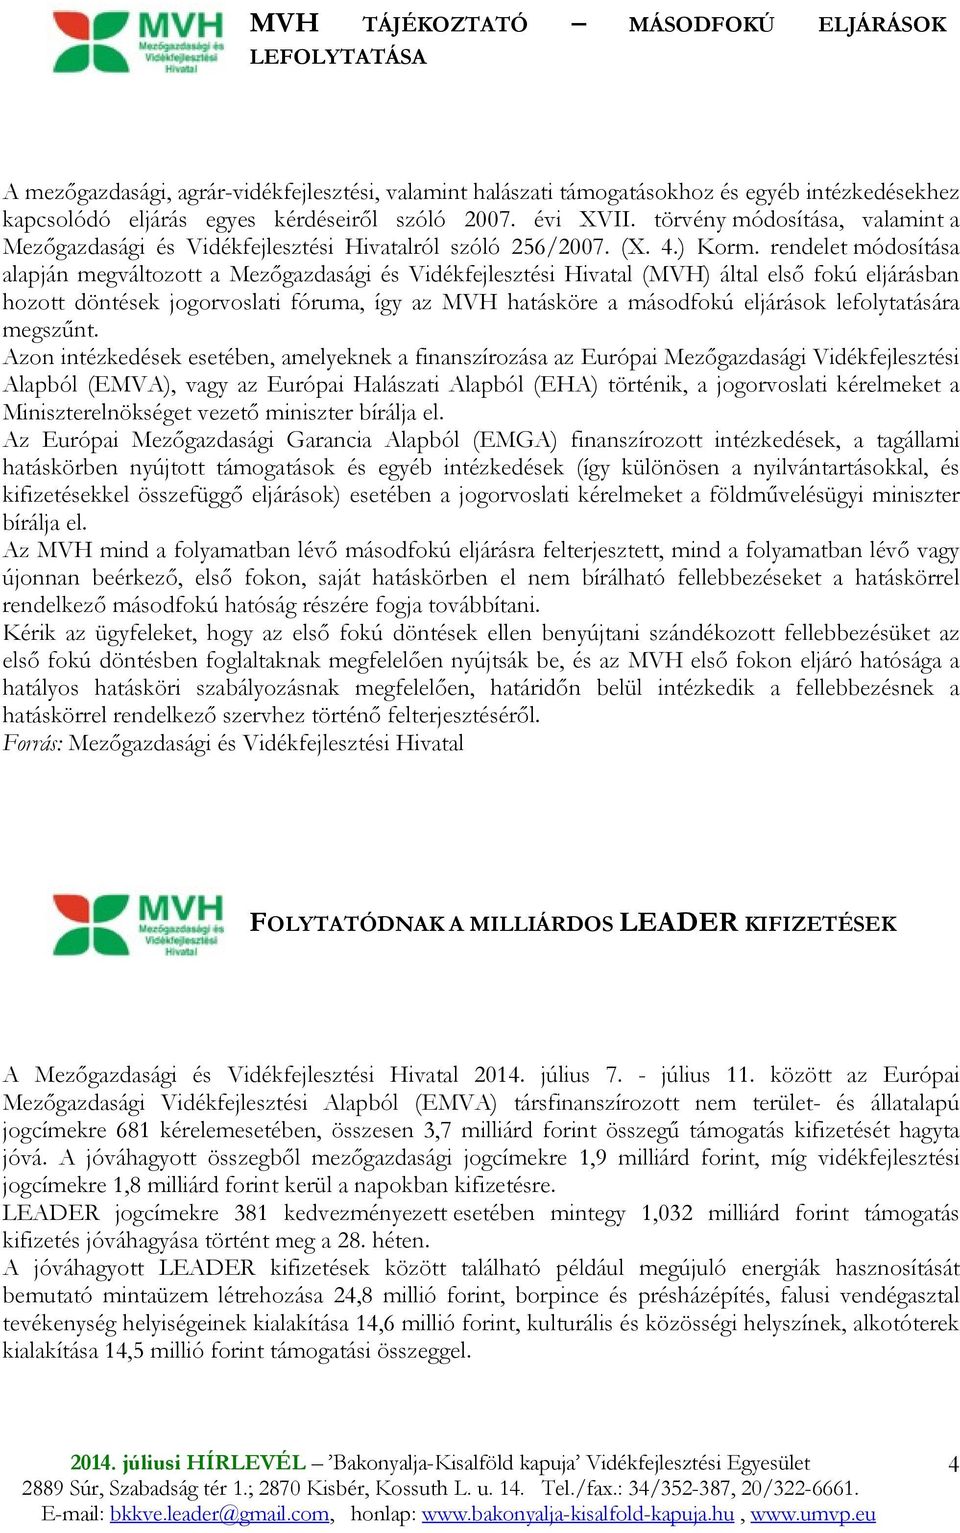 rendelet módosítása alapján megváltozott a Mezıgazdasági és Vidékfejlesztési Hivatal (MVH) által elsı fokú eljárásban hozott döntések jogorvoslati fóruma, így az MVH hatásköre a másodfokú eljárások